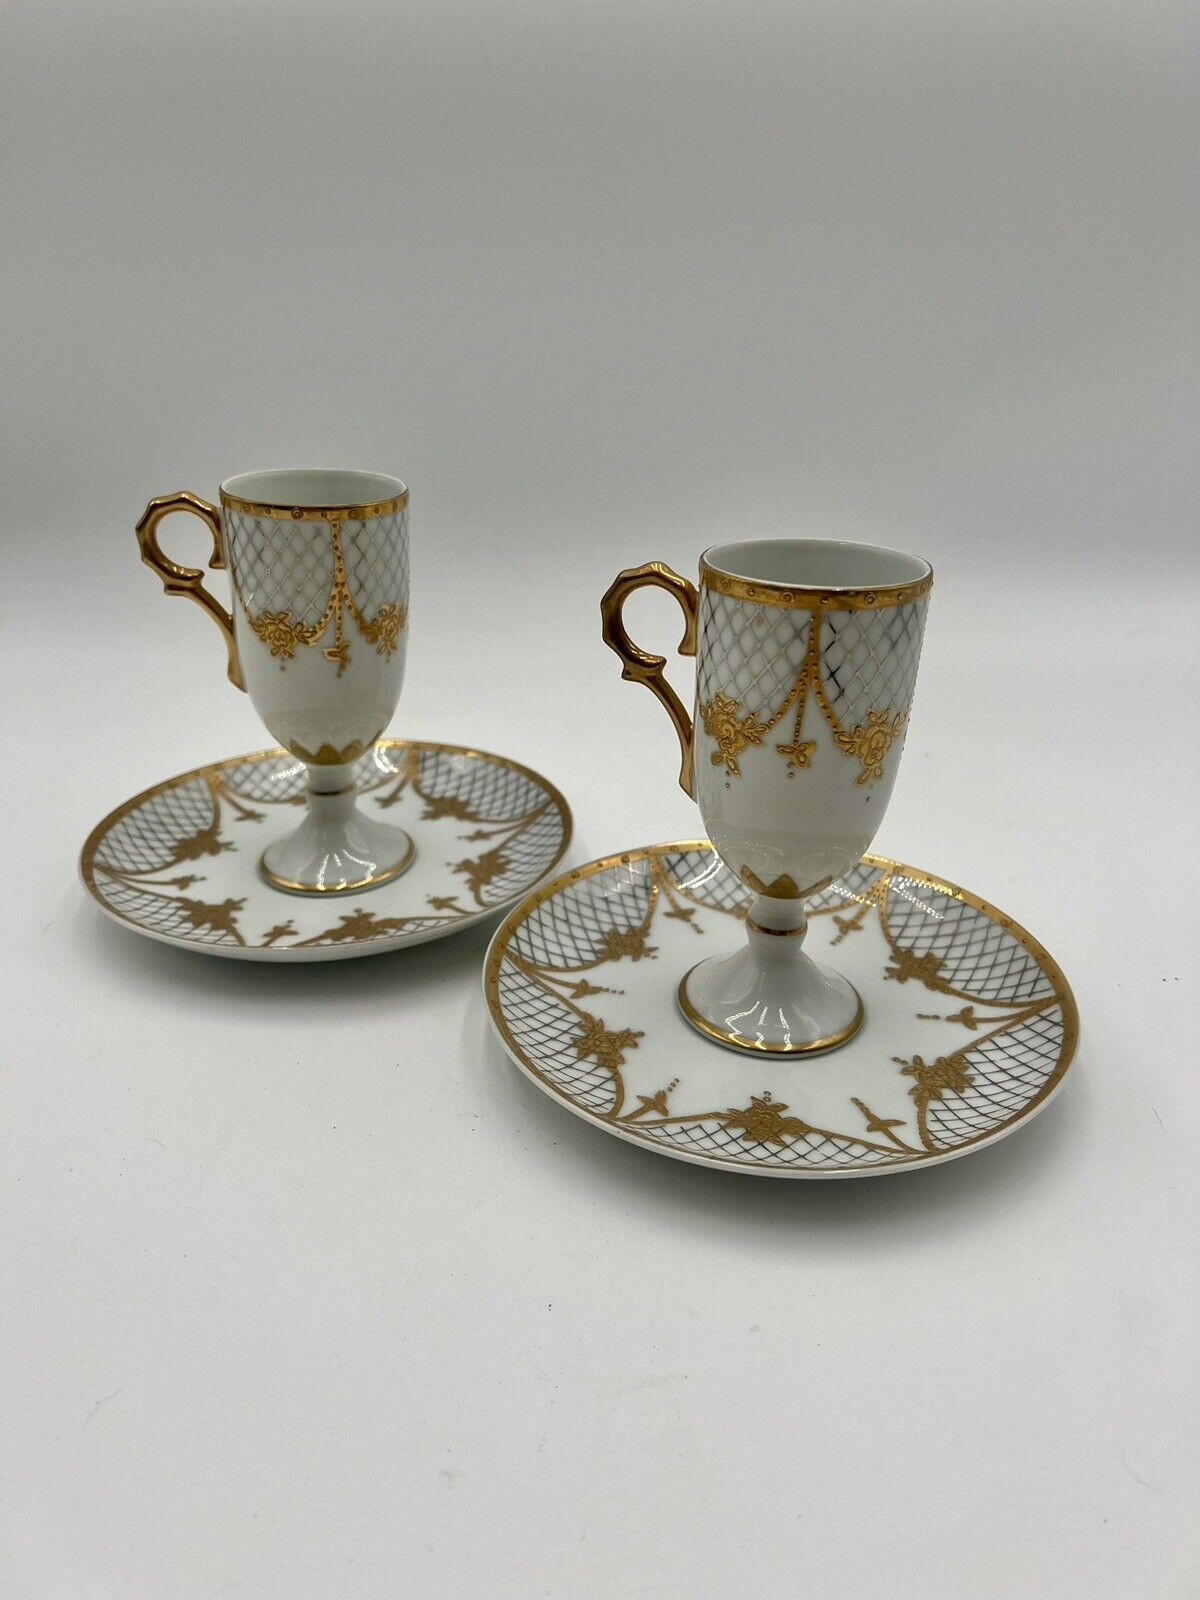 Antique Samson & Co Paris France Porcelain Teacups And Saucers Gold Silver White